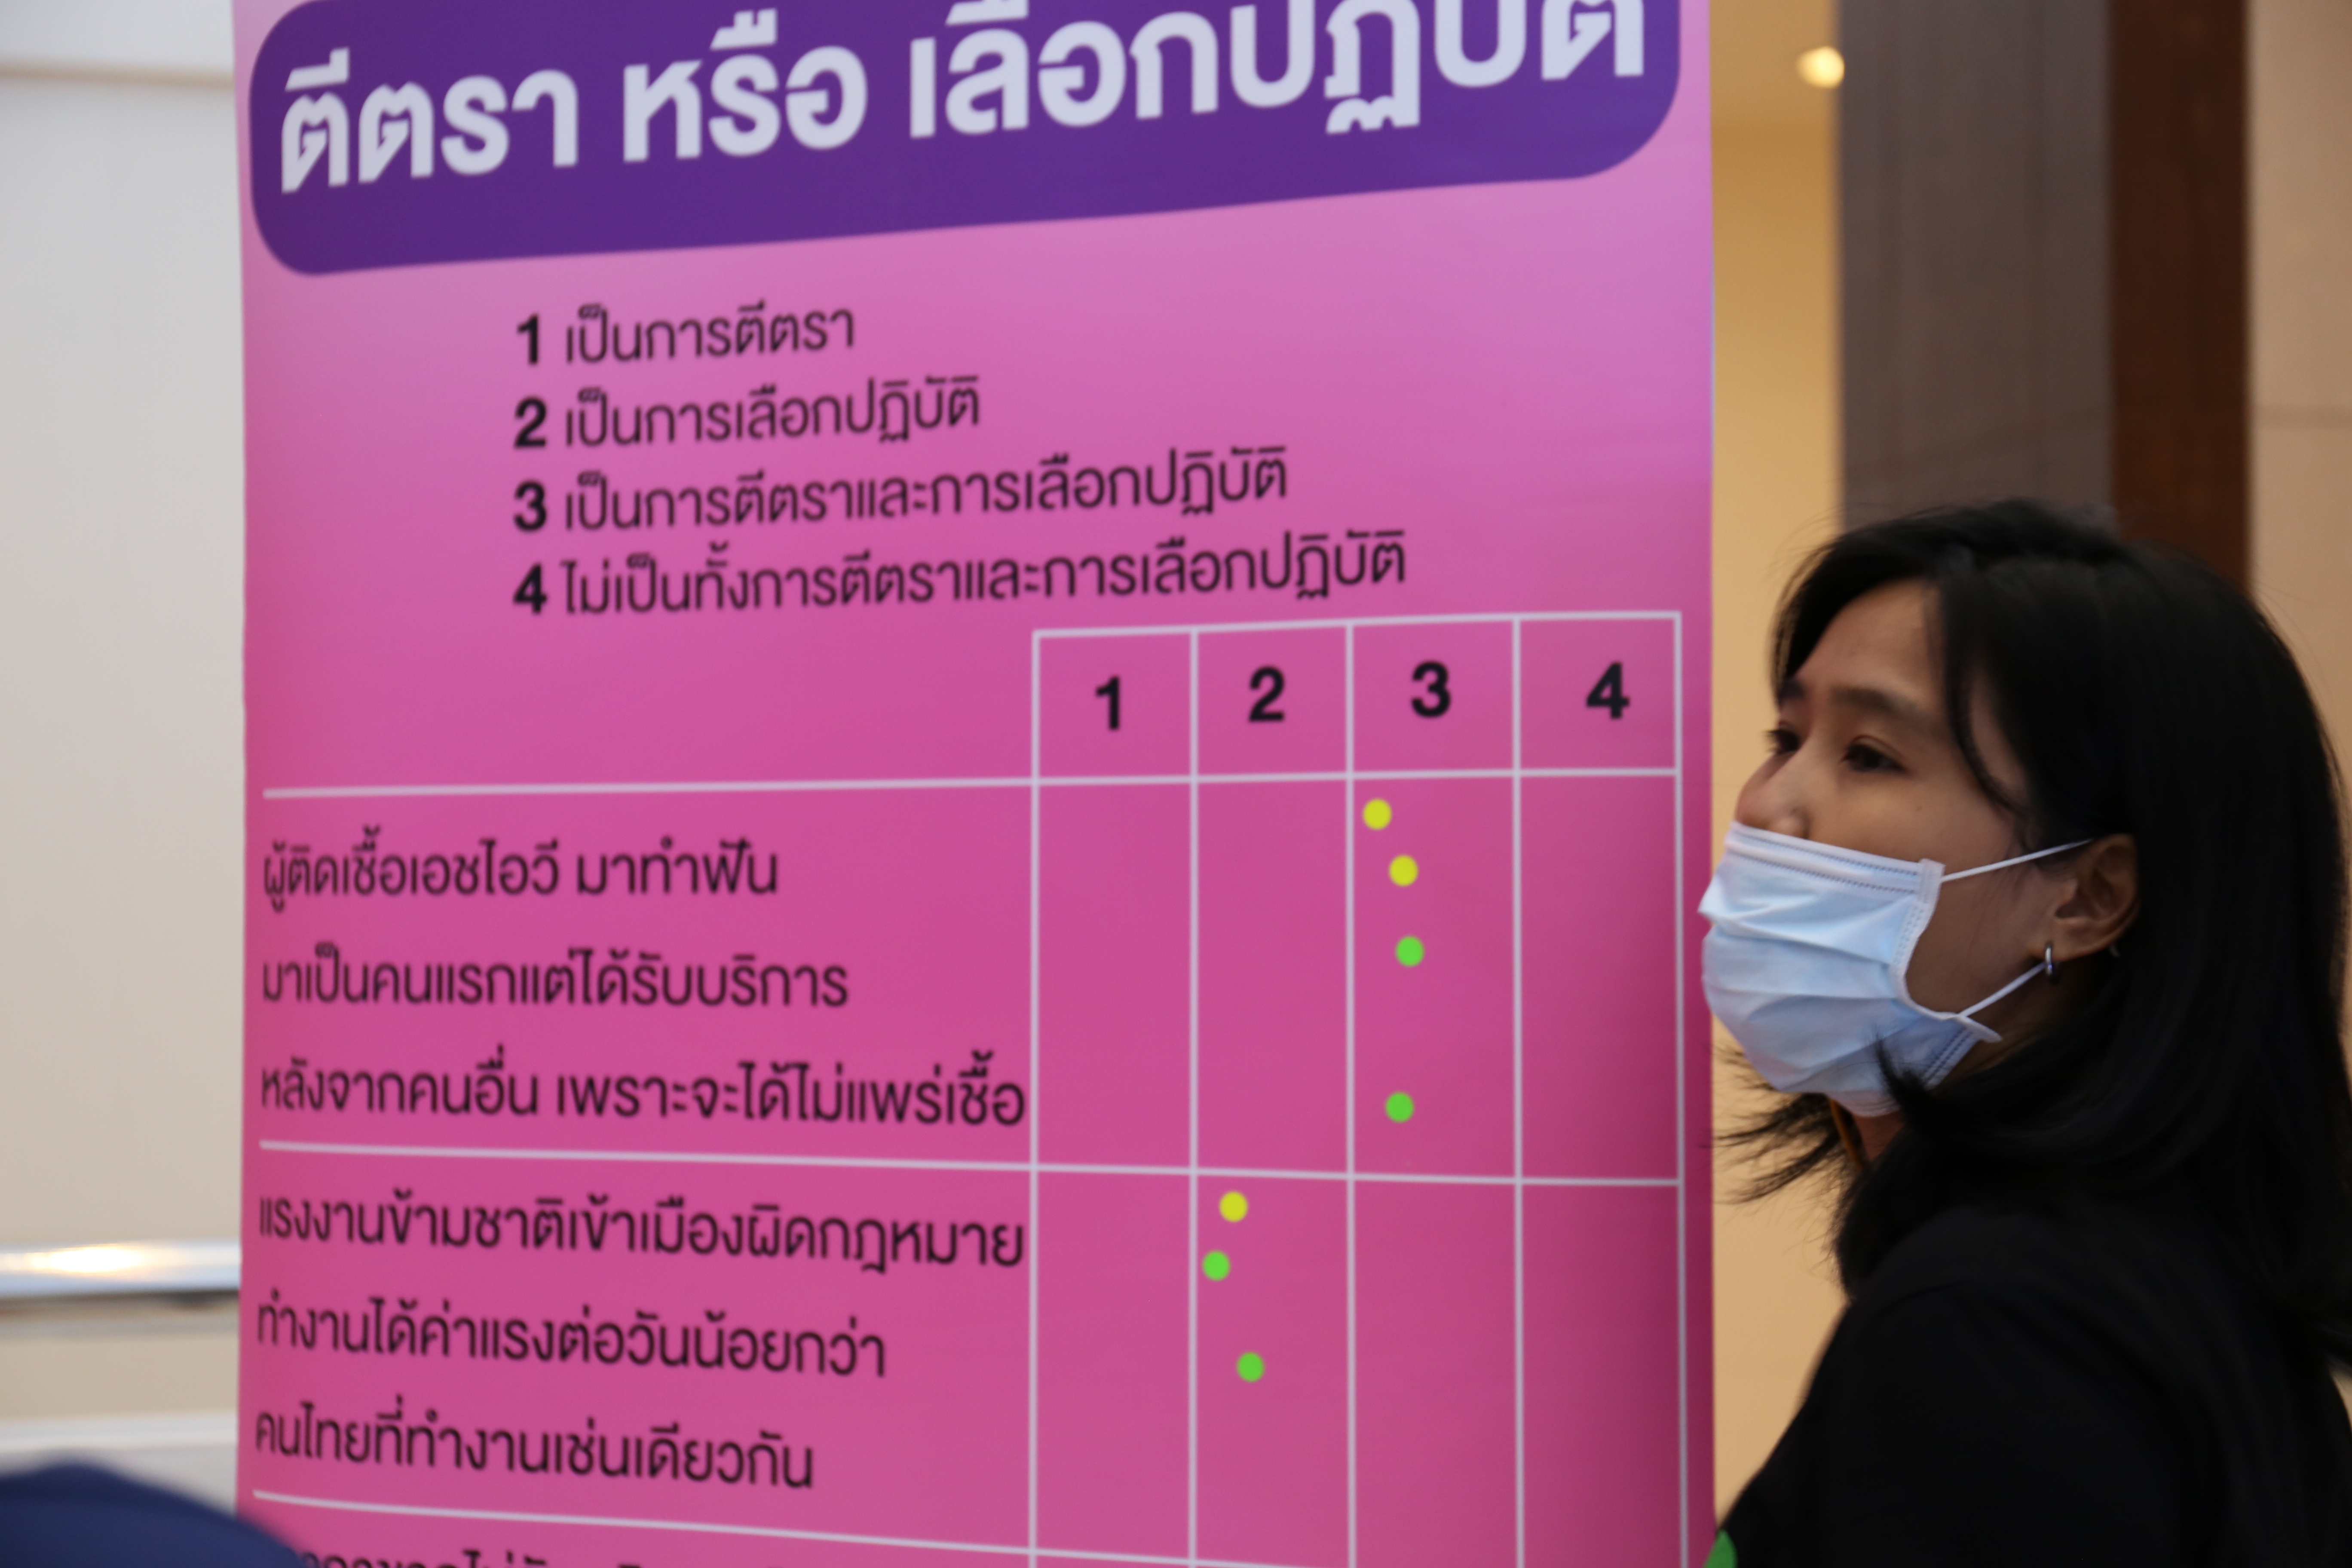 ‘มูลนิธิรักษ์ไทย’ จับมือภาคีเครือข่ายจัดสัมมนาทำความเข้าใจประมวลกฎหมายยาเสพติด เรื่องการลดอันตรายจากการใช้สารเสพติด